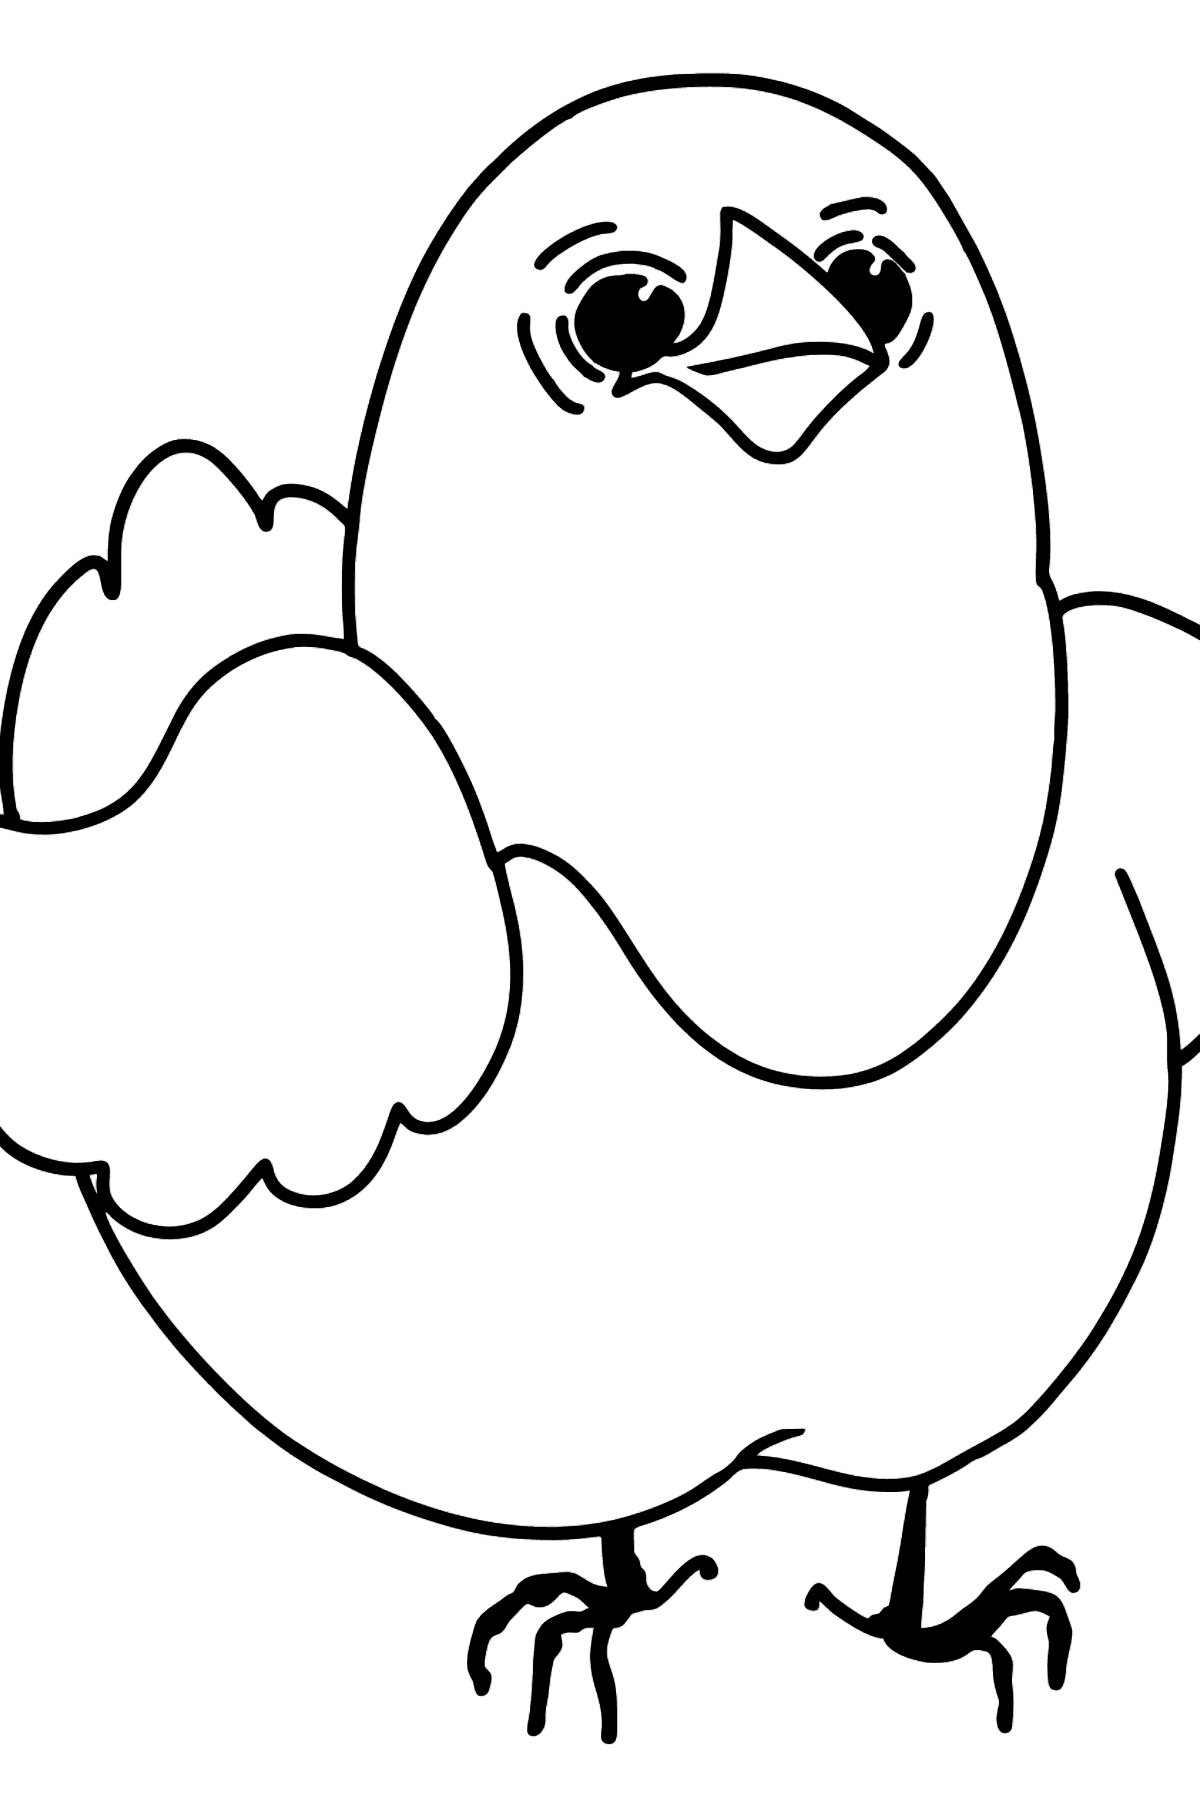 Søt liten kylling tegning til fargelegging - Tegninger til fargelegging for barn